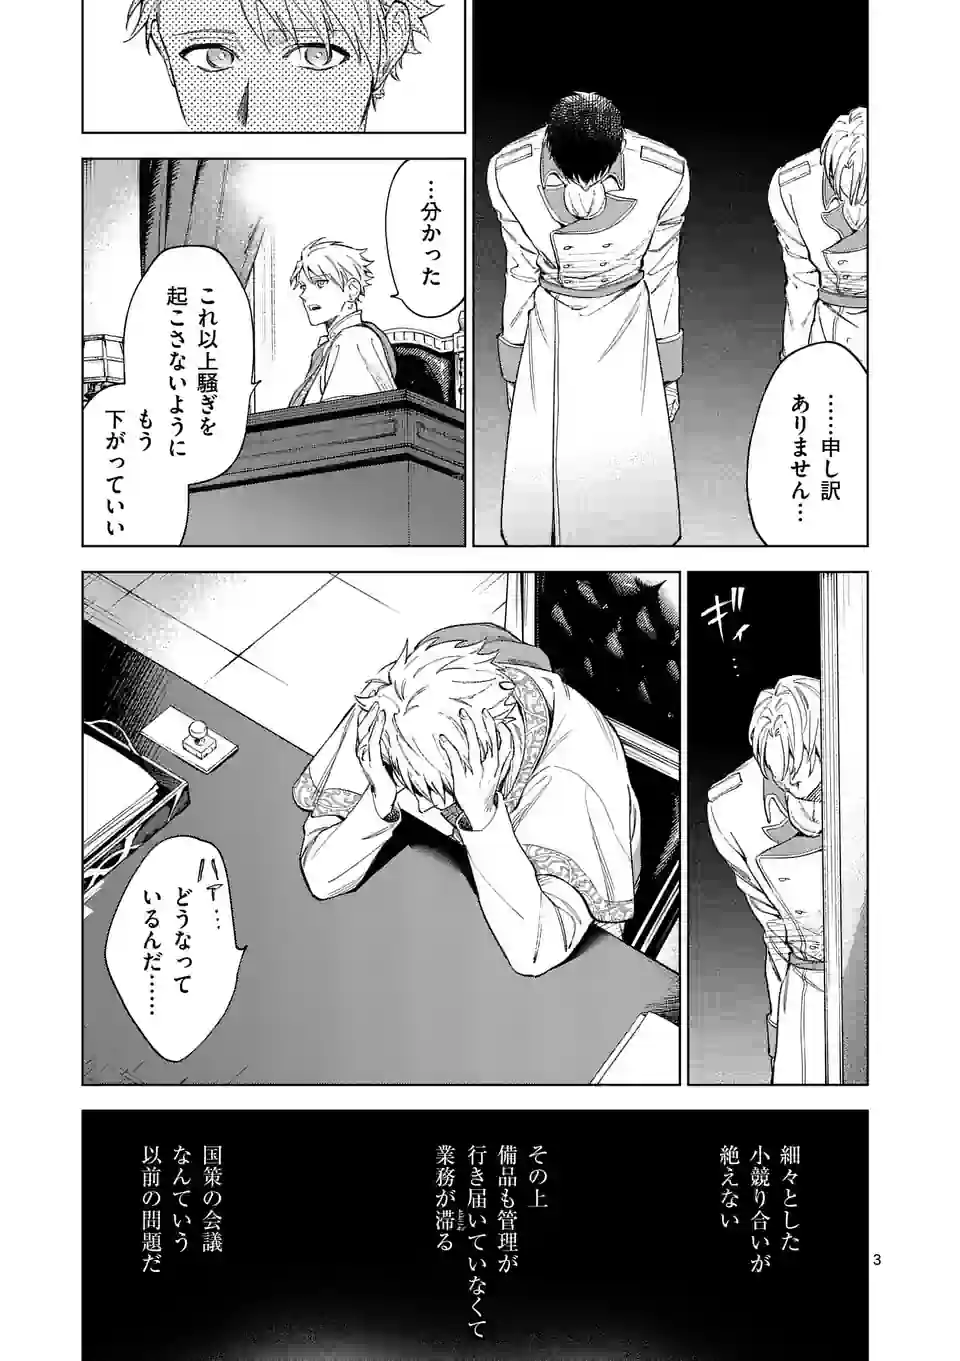 Mou Kyoumi ga Nai to Rikonsareta Reijou no Igai to Tanoshii Shinseikatsu - Chapter 9 - Page 3